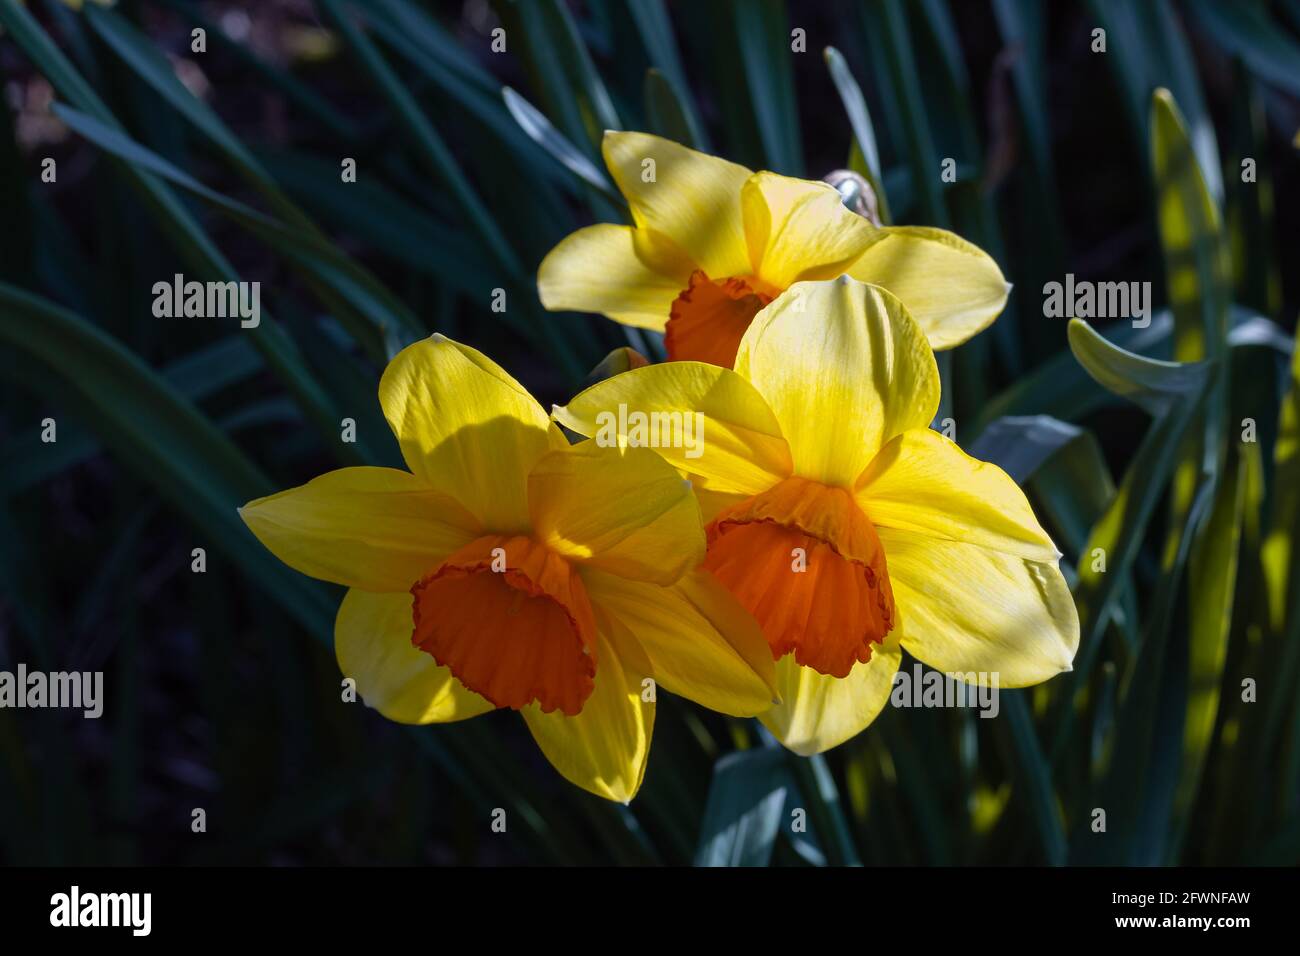 Bellissimi narcischi gialli in giardino. Foto di viaggio, vista sulla strada, messa a fuoco selettiva, flora foto concettuale. Foto Stock